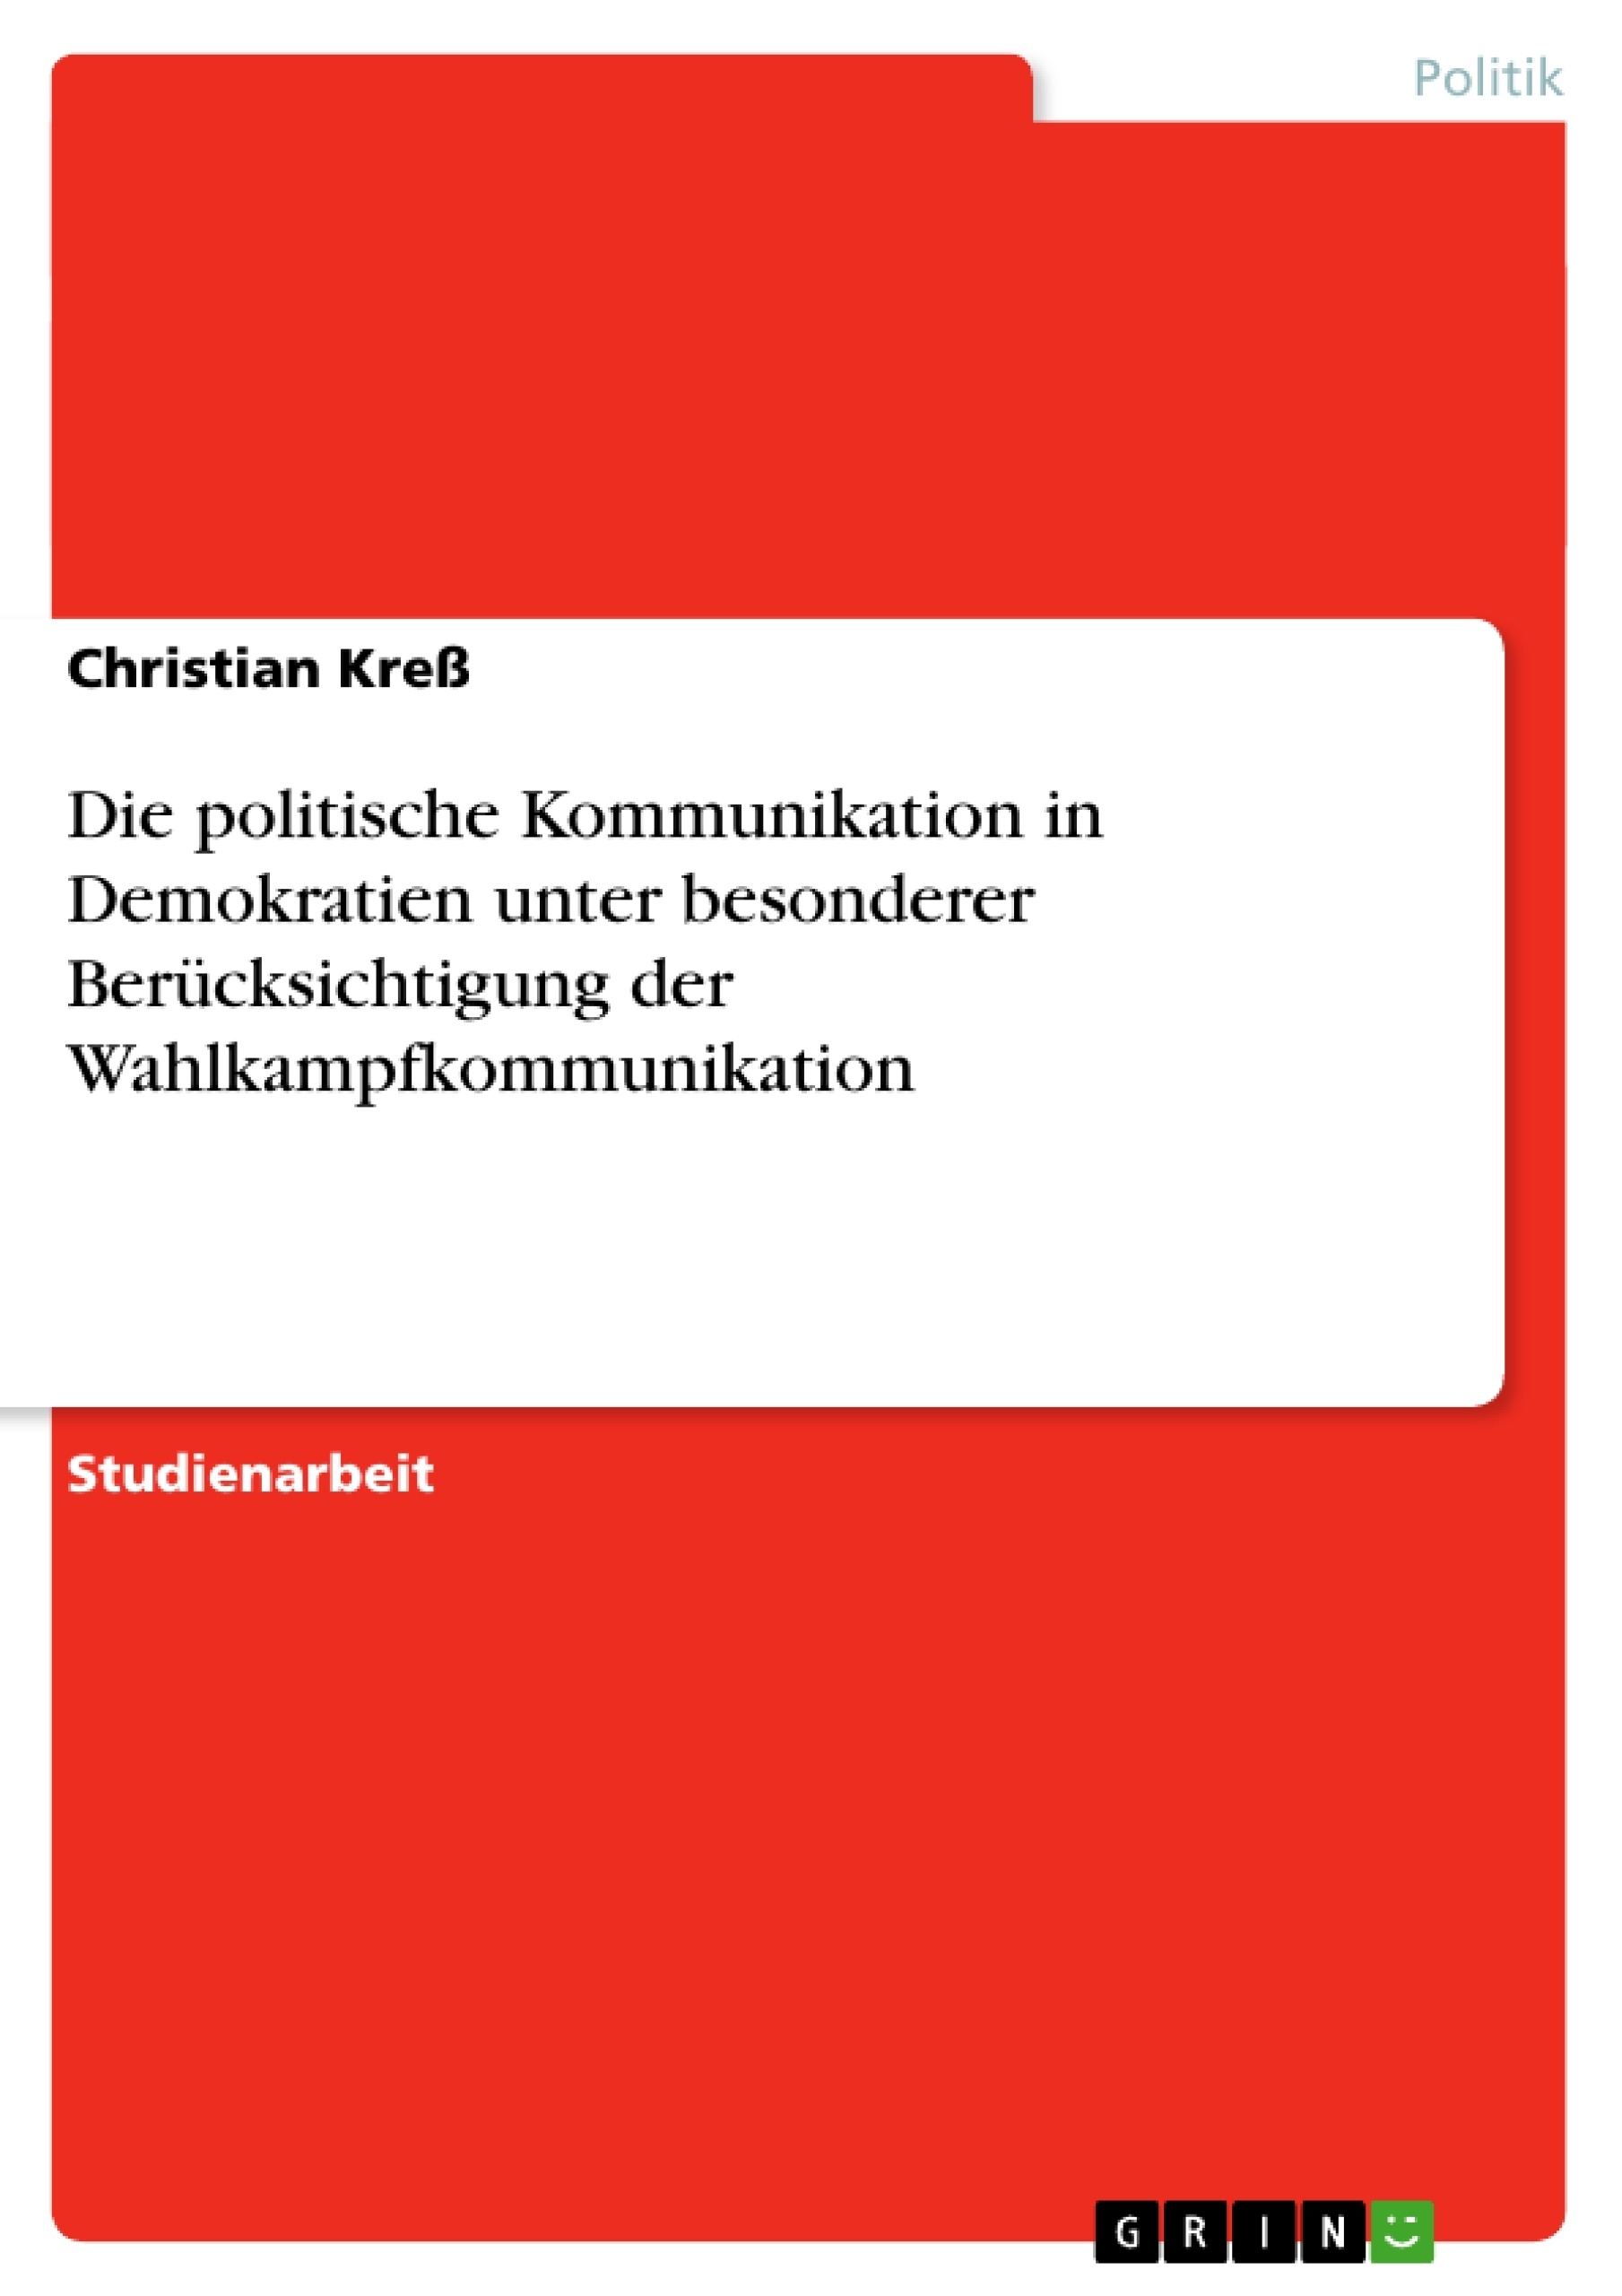 Title: Die politische Kommunikation in Demokratien unter besonderer Berücksichtigung der Wahlkampfkommunikation